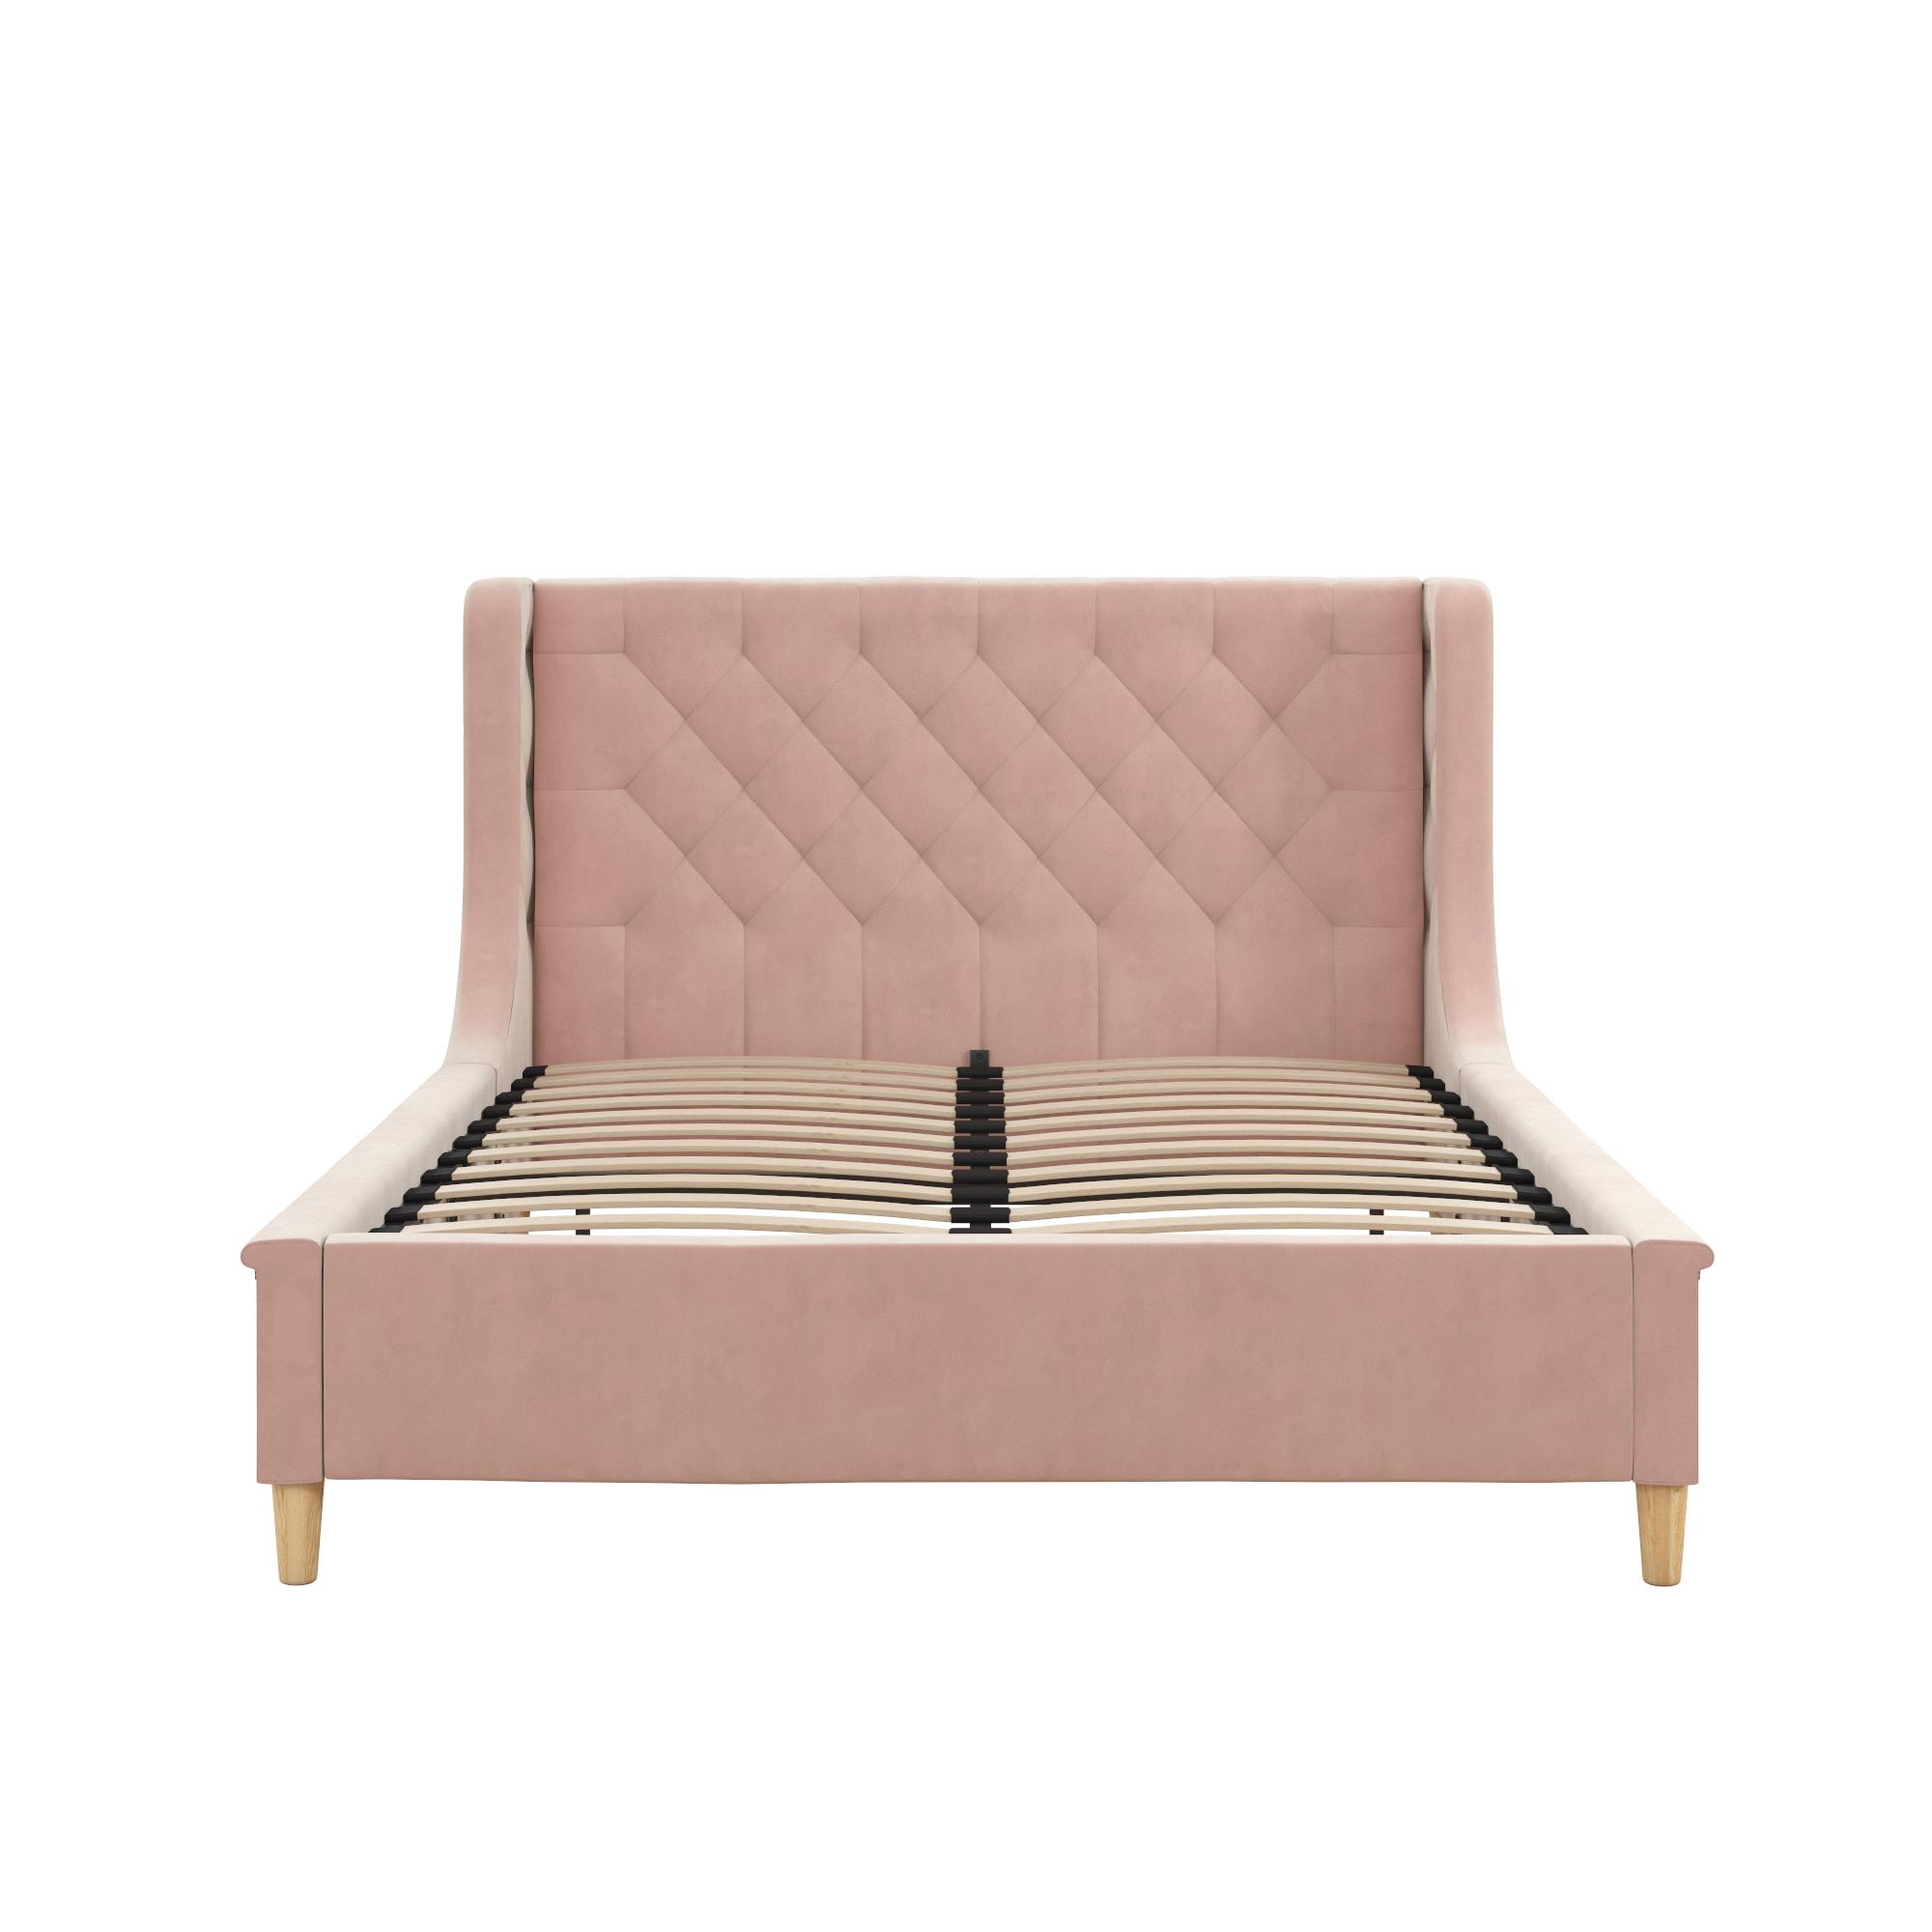 Little Seeds Monarch Hill Ambrosia Kids' Full Upholstered Bed, Pink Velvet - image 4 of 17